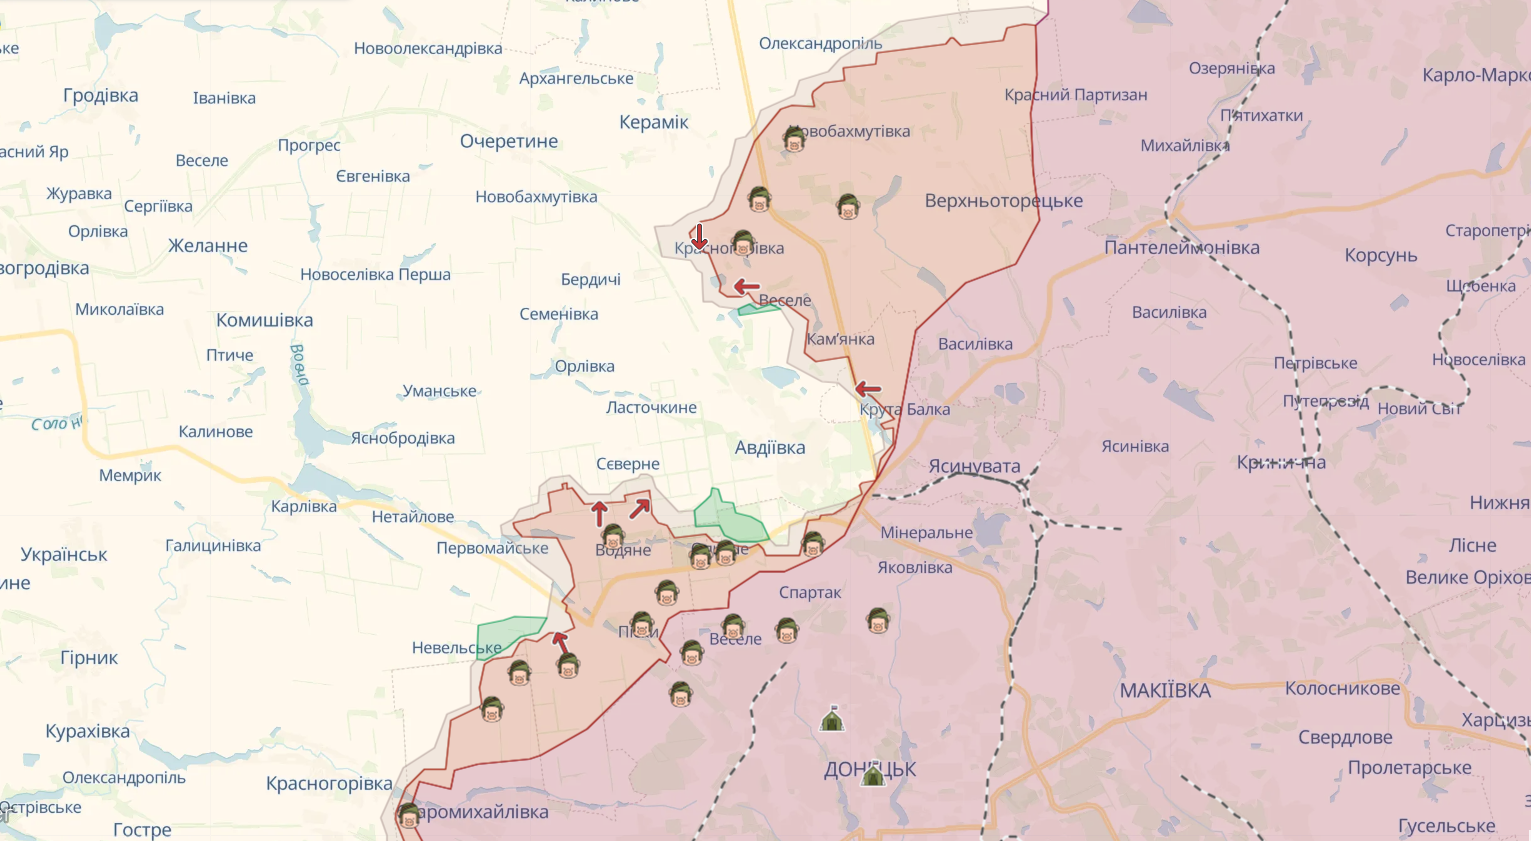 Rosyjskie wojska gromadzą się w pobliżu Awdijiwki, ukraińskie siły zbrojne przygotowują się do trzeciej fali eskalacji - Barabasz